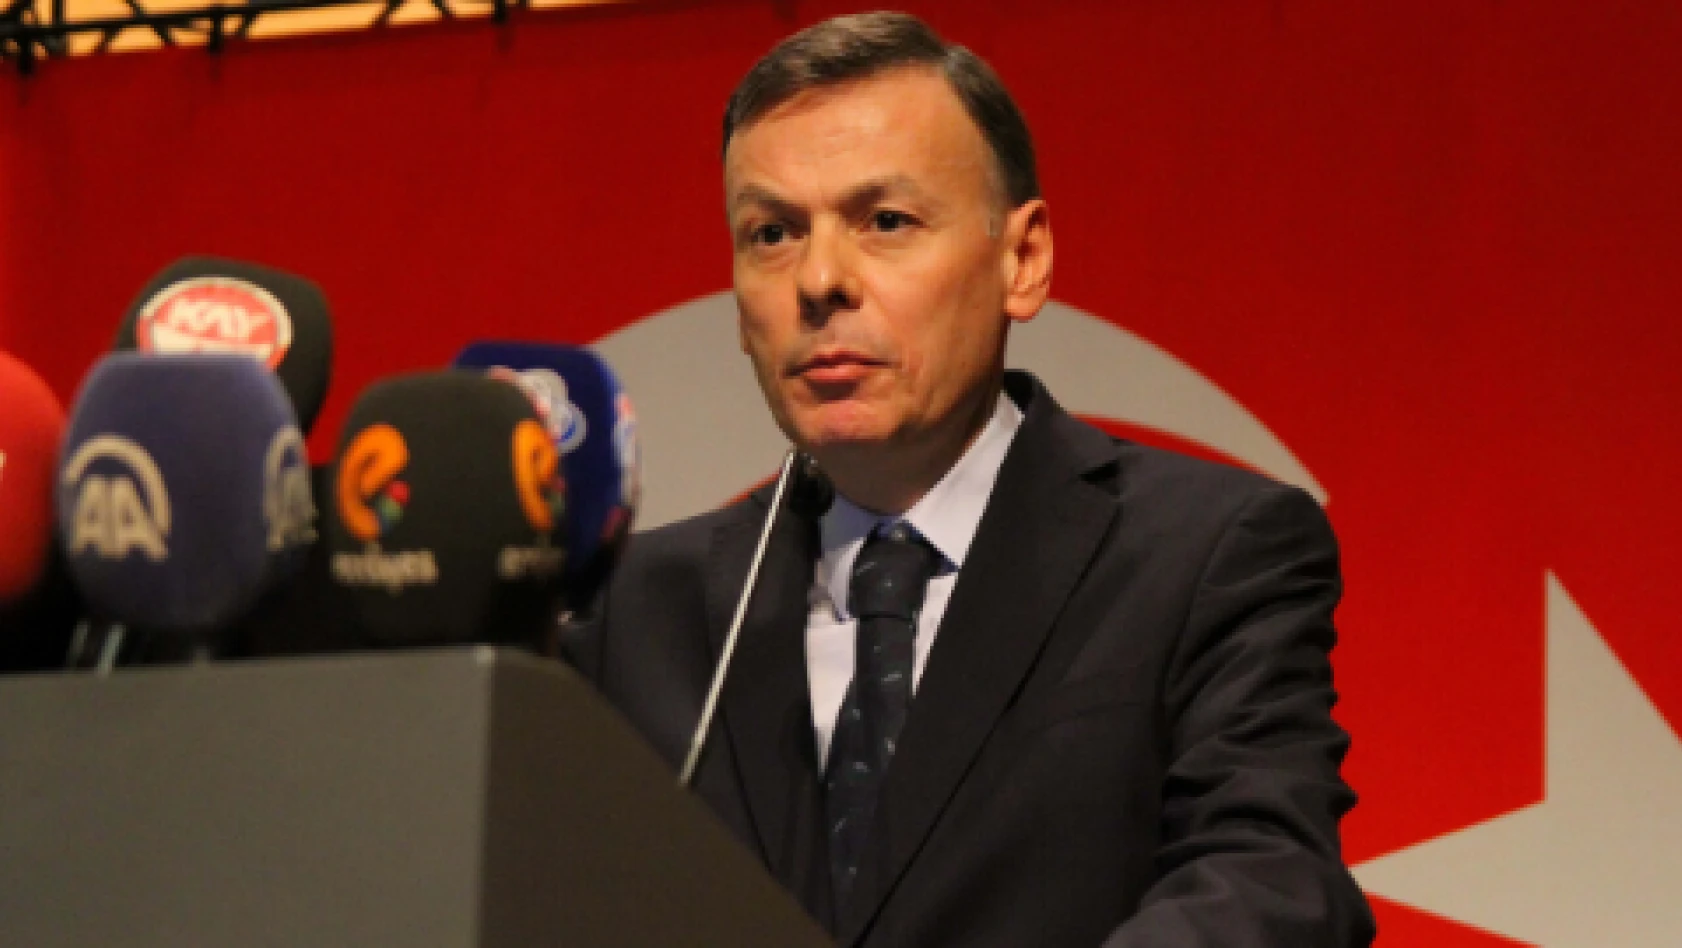 İhracat Genel Müdürü Ağar Kayseri'de ekonomik değerlendirmelerde bulundu